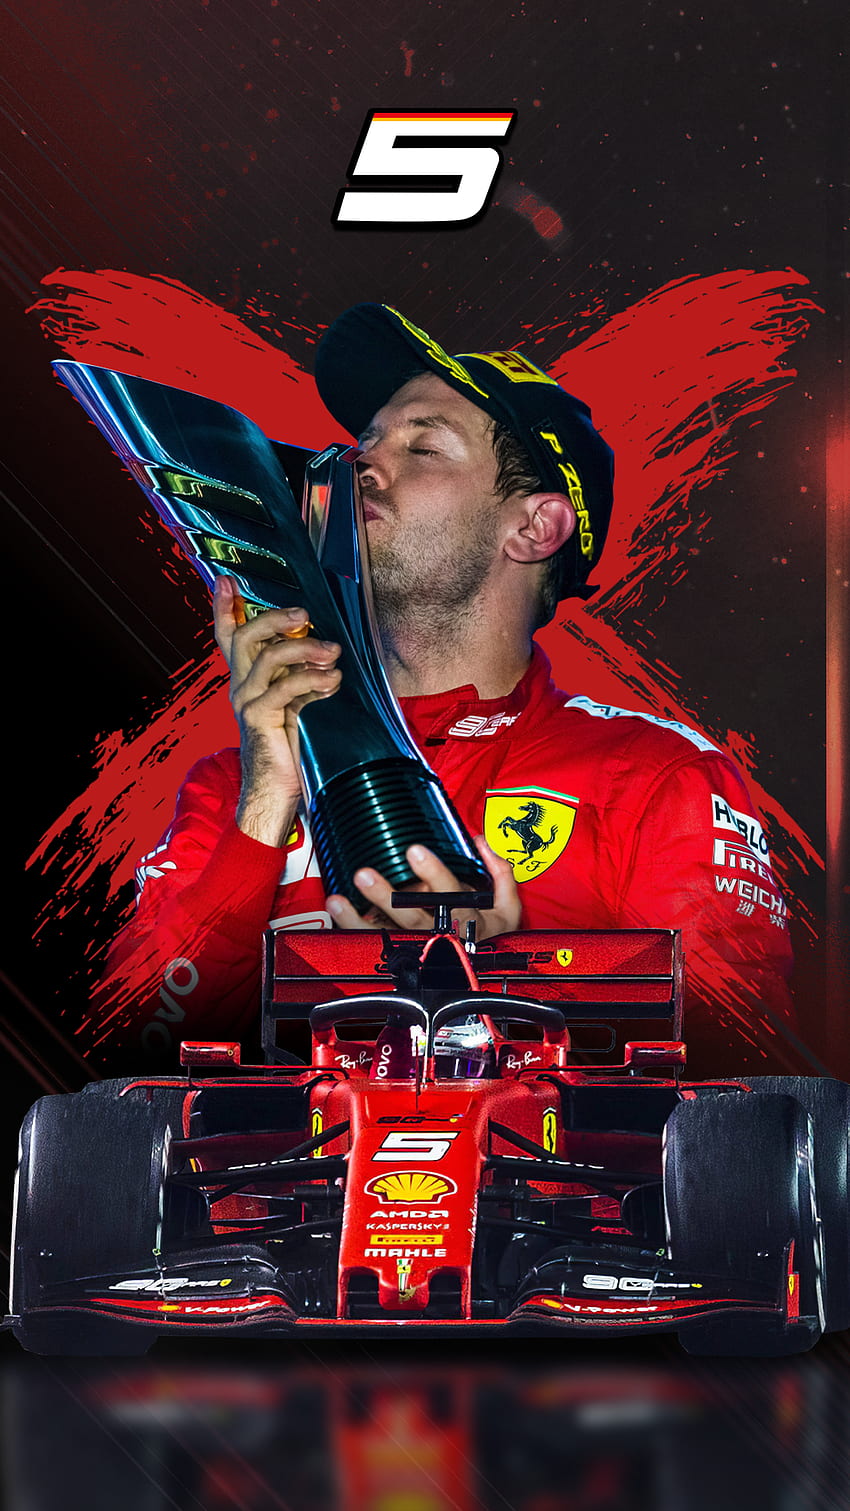 Sebastian Vettel Singapur 2019 Teléfono, Sebastian Vettel F1 fondo de pantalla del teléfono